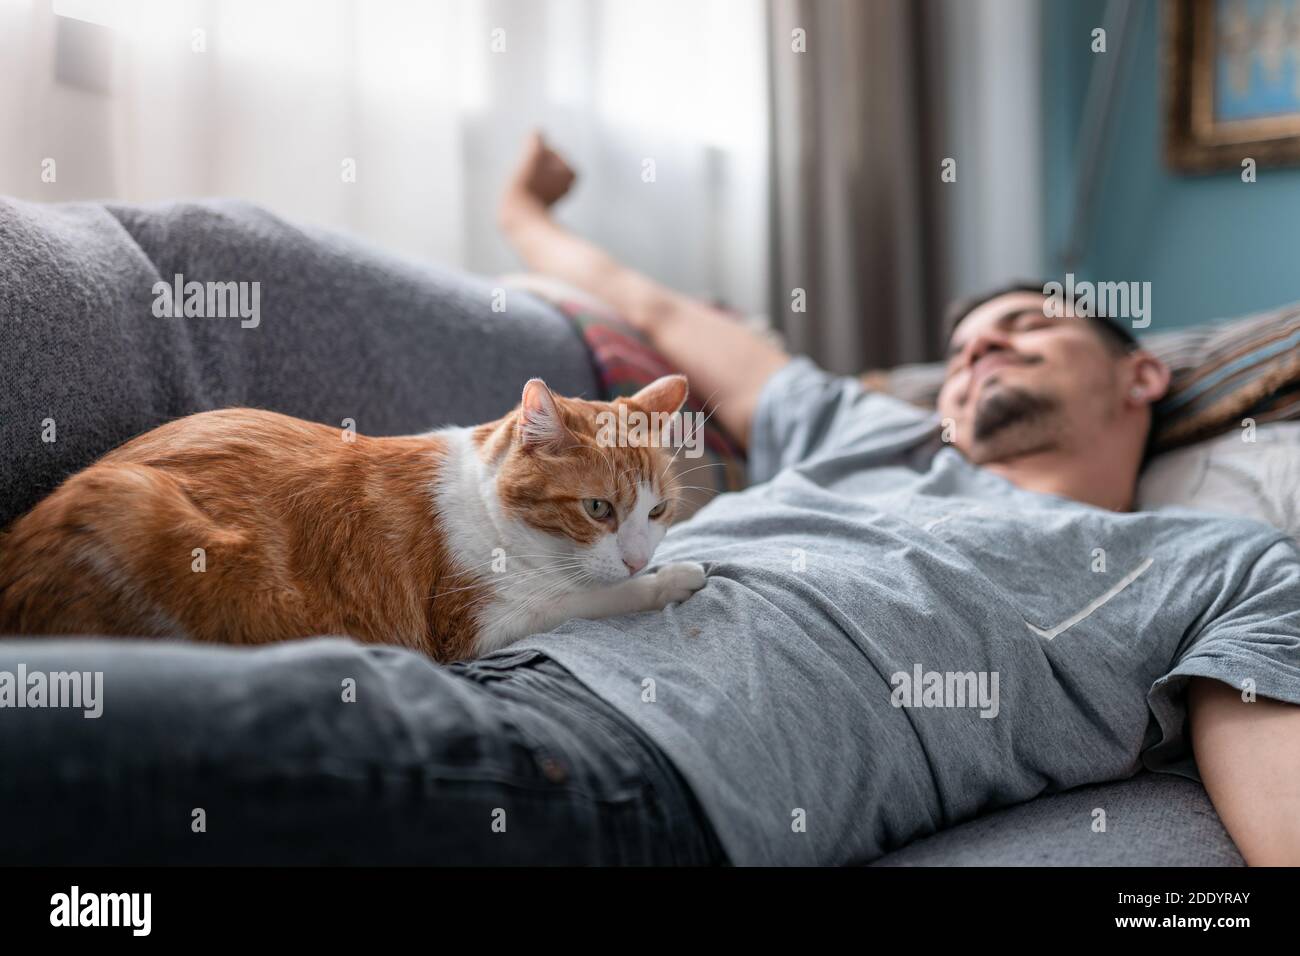 gatto bianco e marrone che giace sopra un giovane uomo che stende le braccia dopo aver dormito Foto Stock